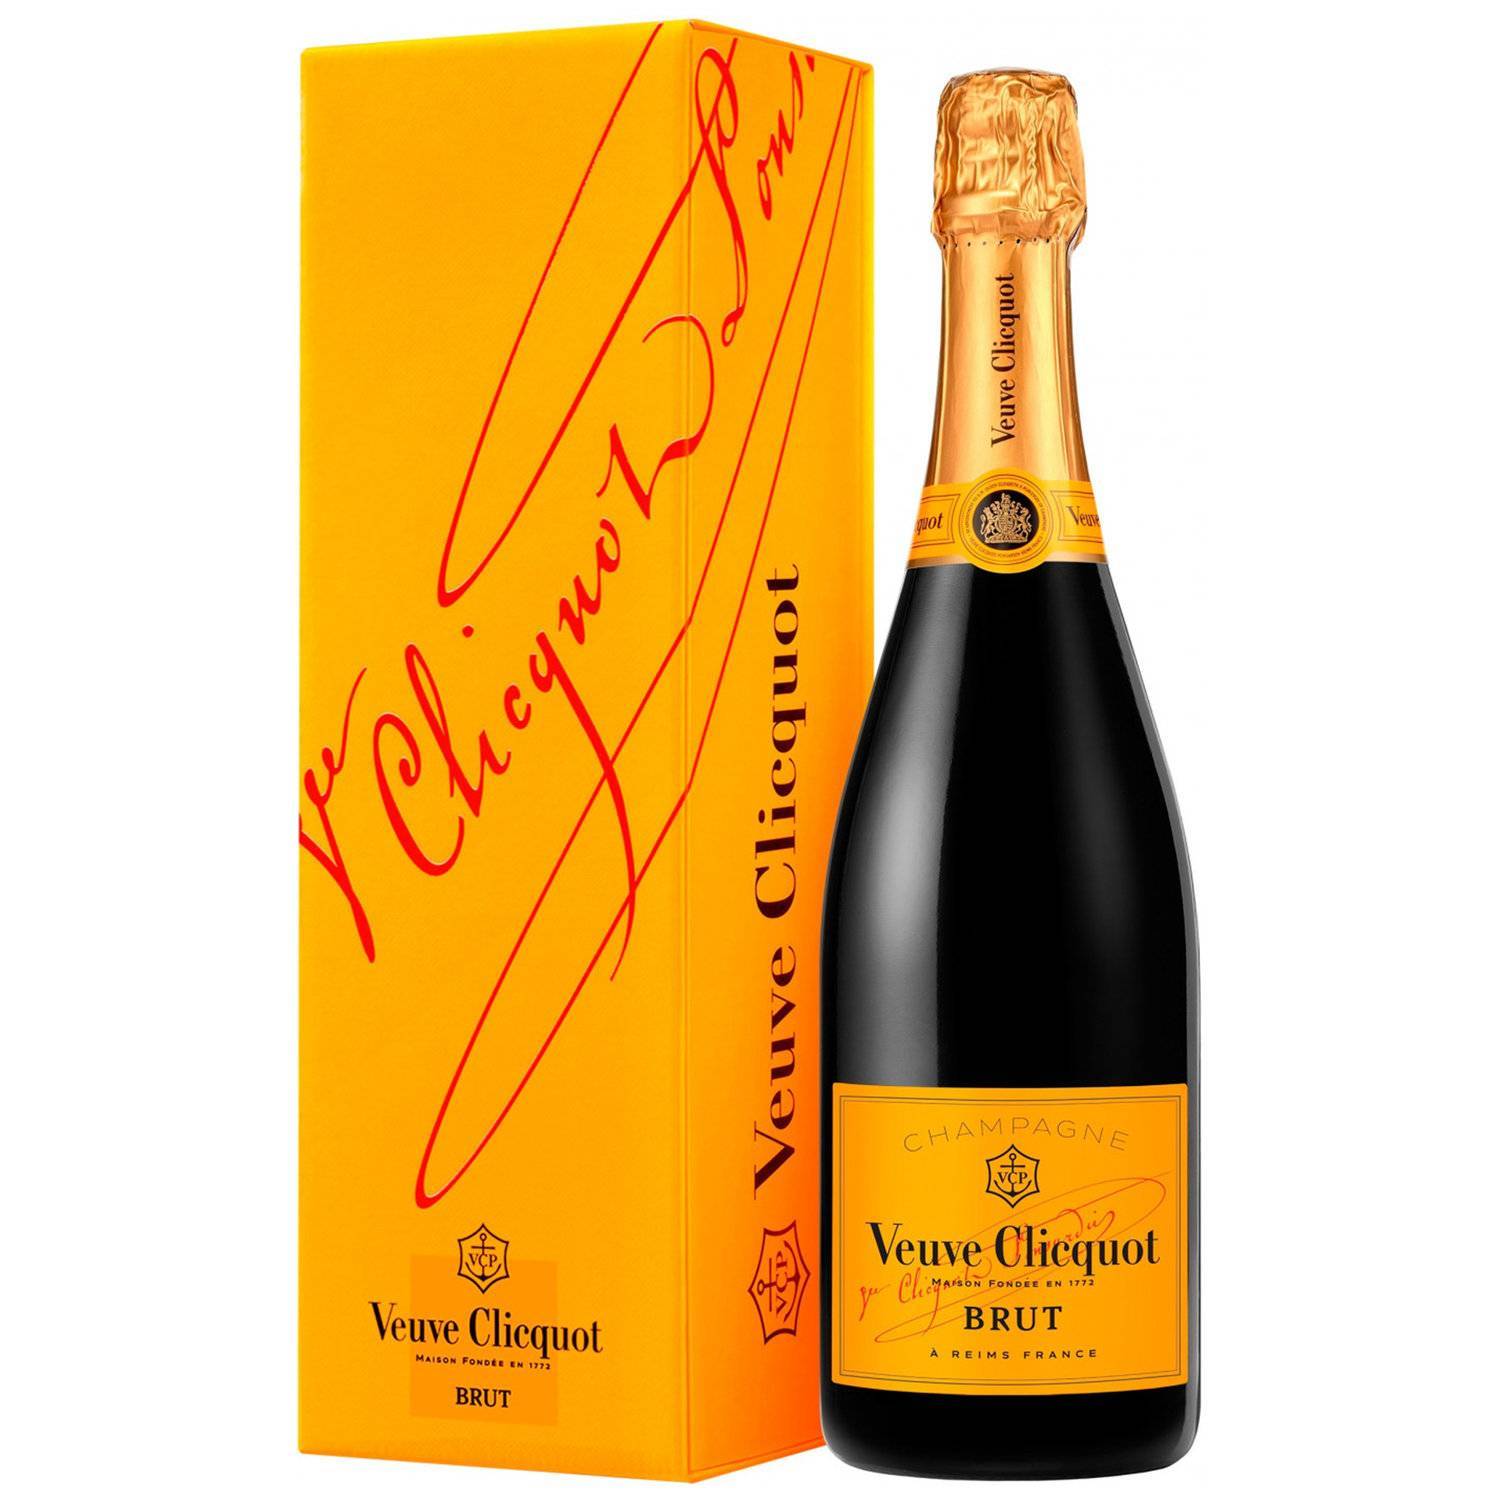 Вдова клико купить в москве. Вдова Клико шампанское. Вдова глюко шампанское. Шампанское "Veuve Clicquot Ponsardin" (вдова Клико Понсардин). Шампанское Veuve Clicquot Brut 0,75 л.